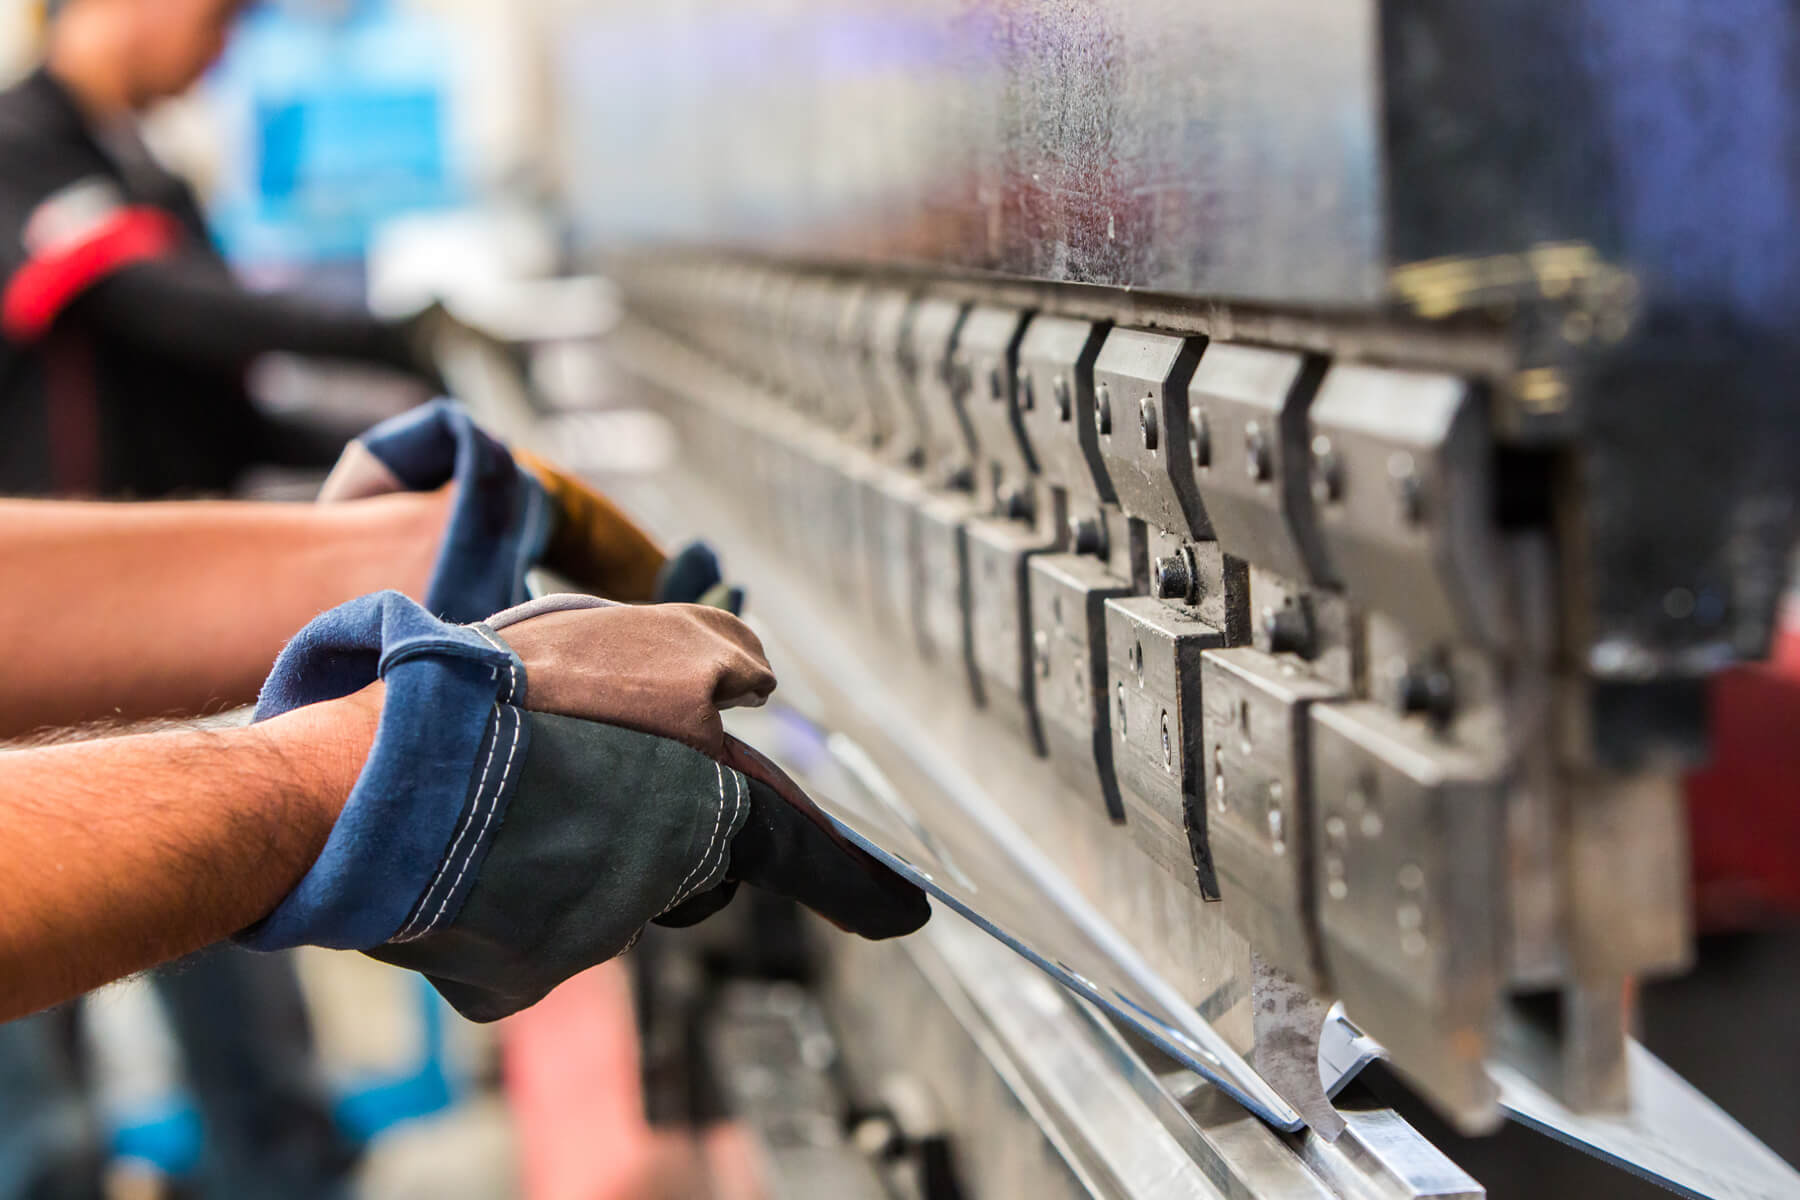 Arbeiter mit Handschuhen halten eine Metallplatte in eine Maschine zum Stanzen oder Schneiden.